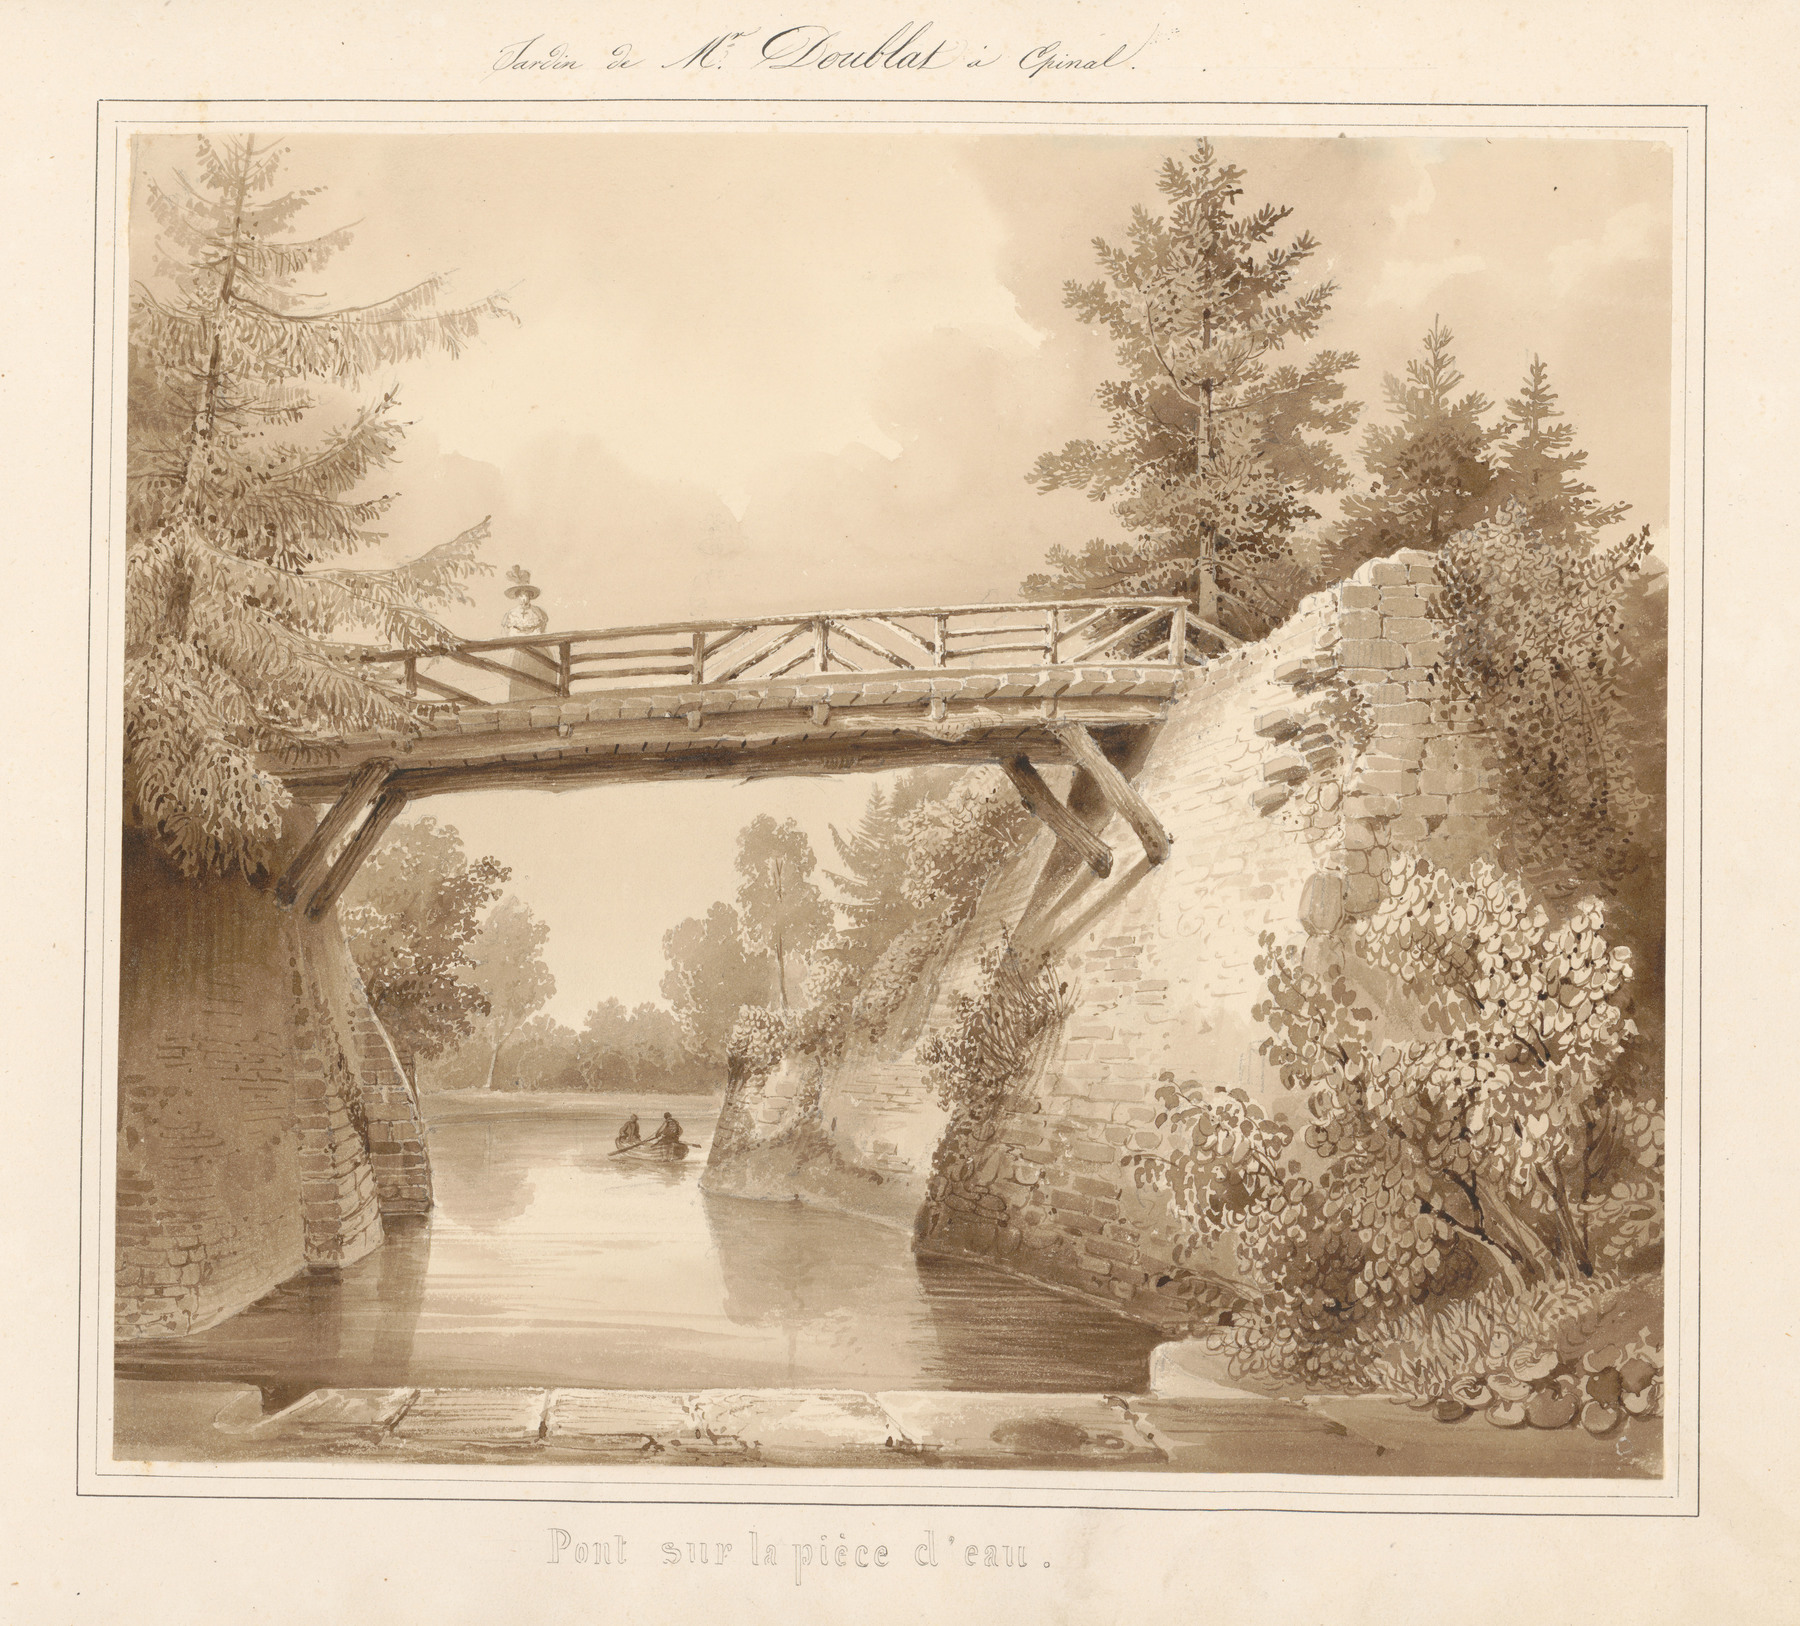 Contenu du Le château d'Epinal : Pont sur la pièce d'eau